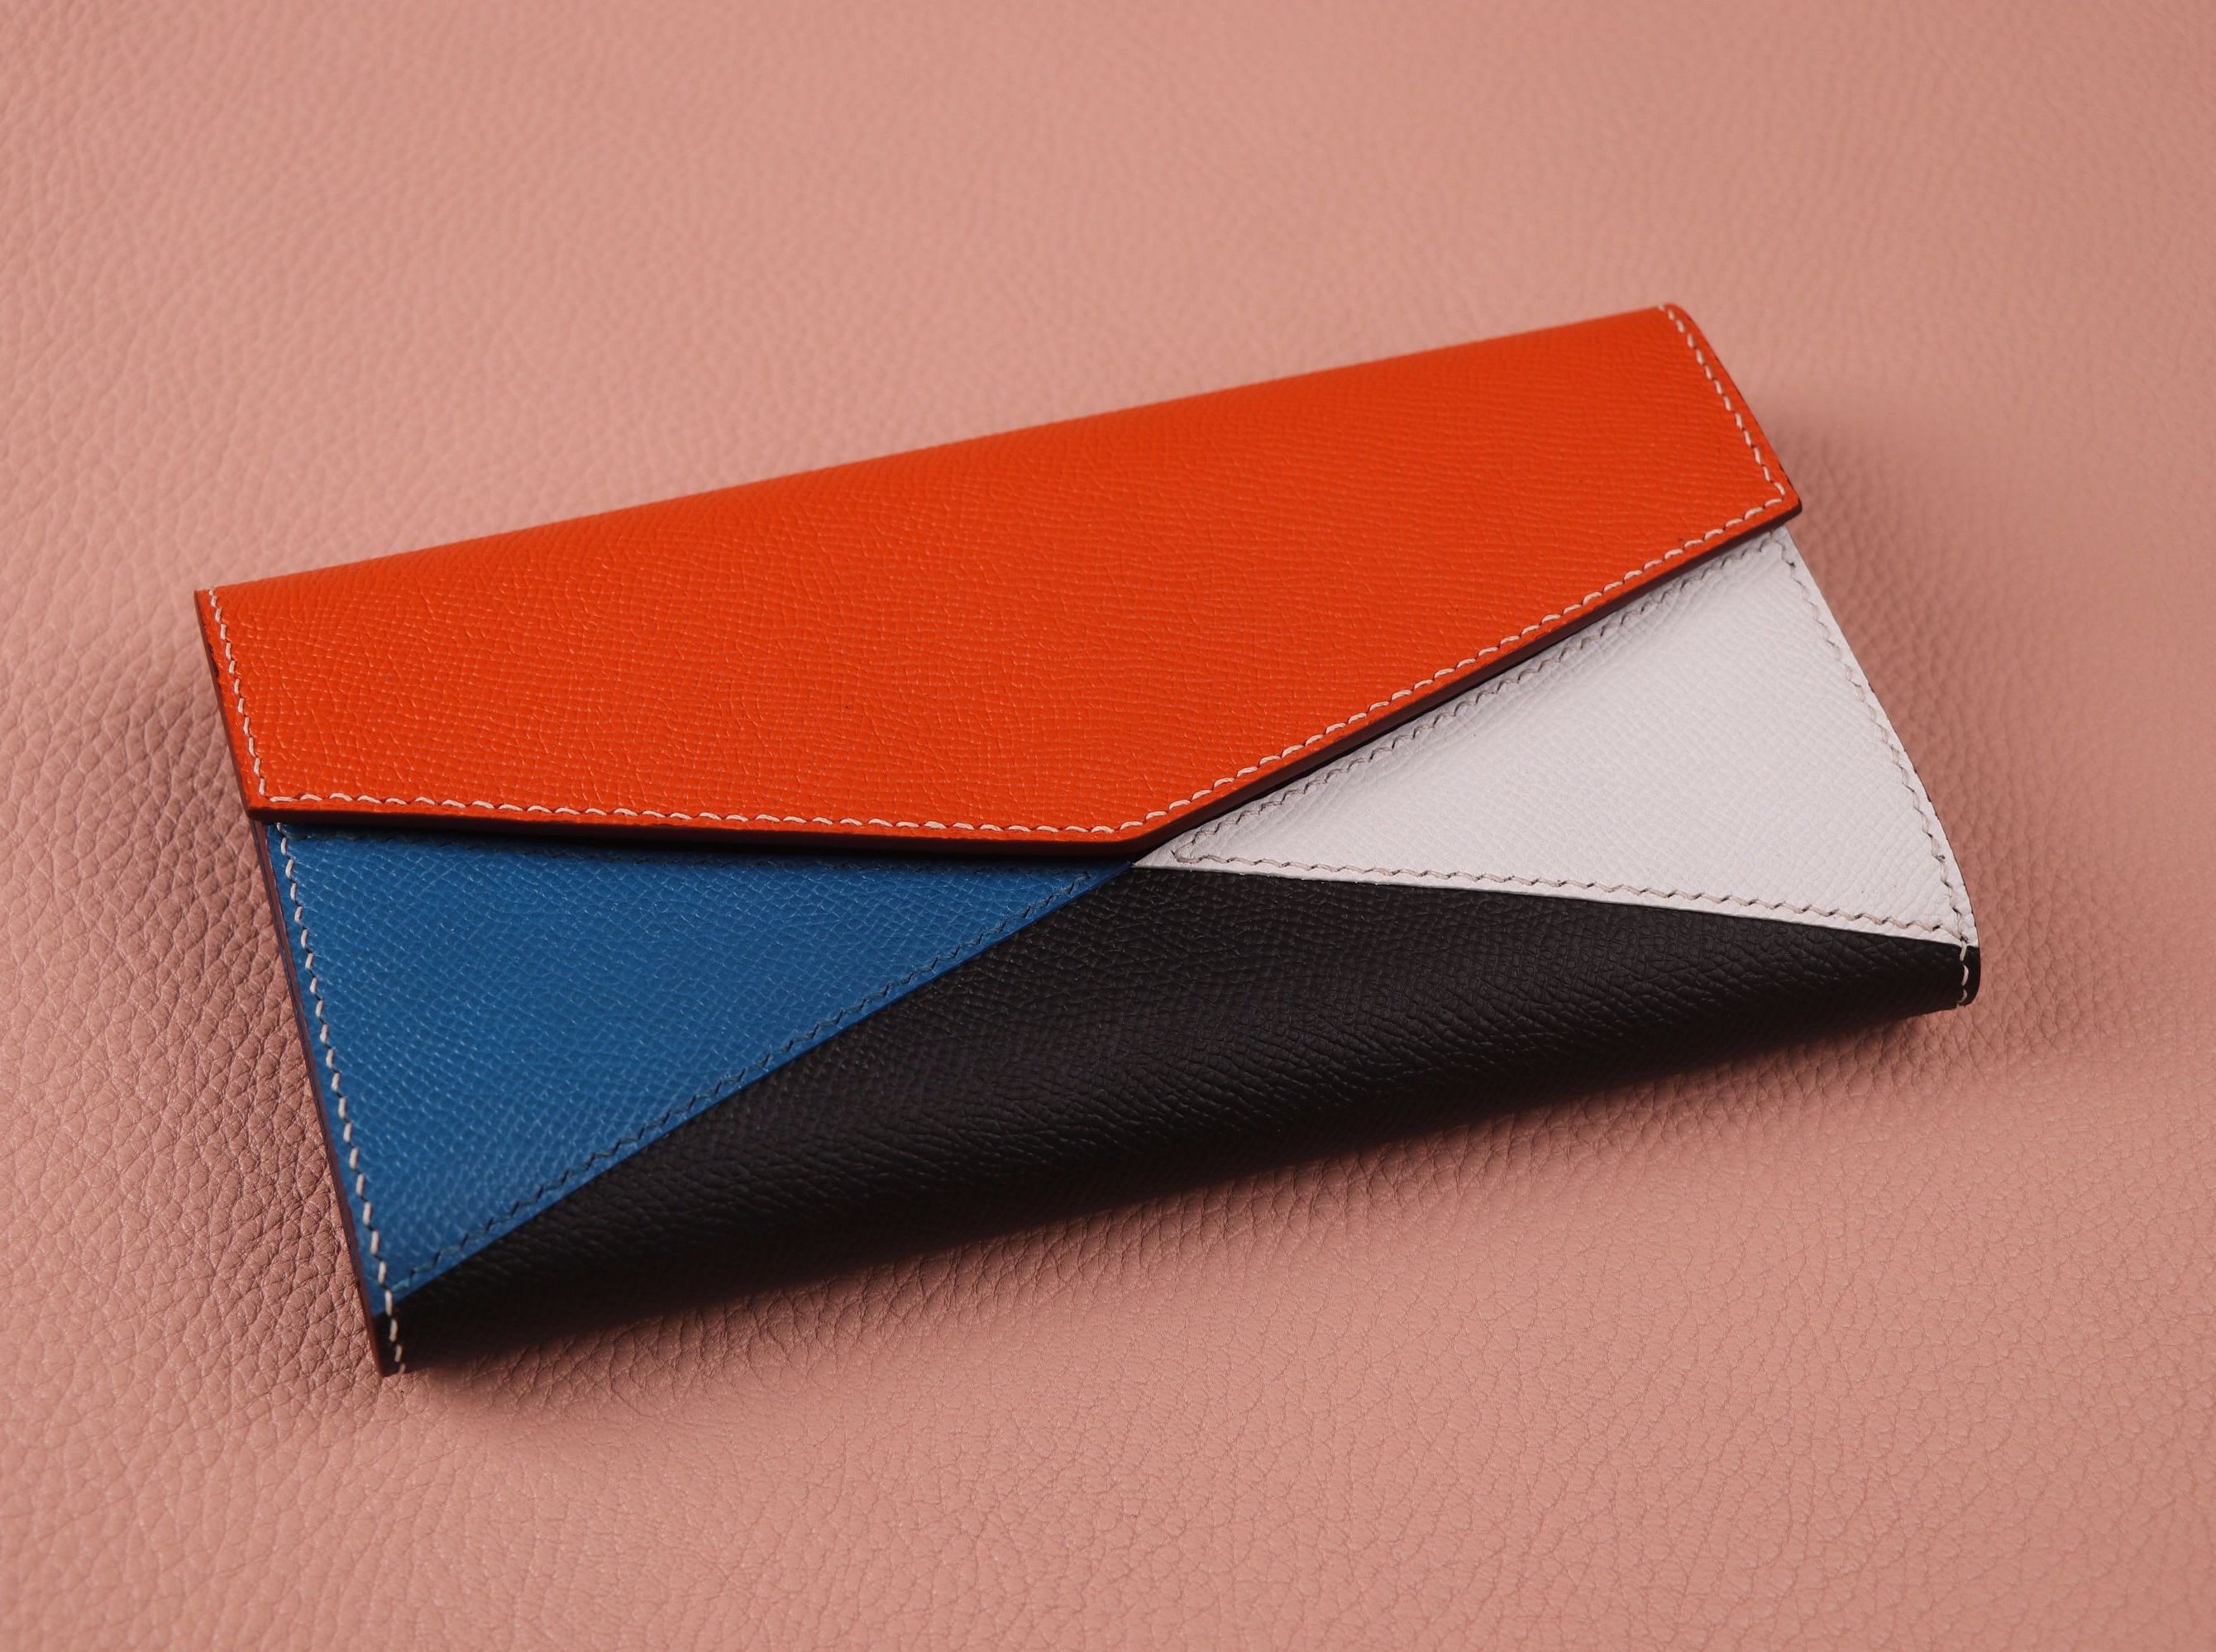 多种颜色搭配
规则的几何线条
手掌纹的质感
一个完美的手包